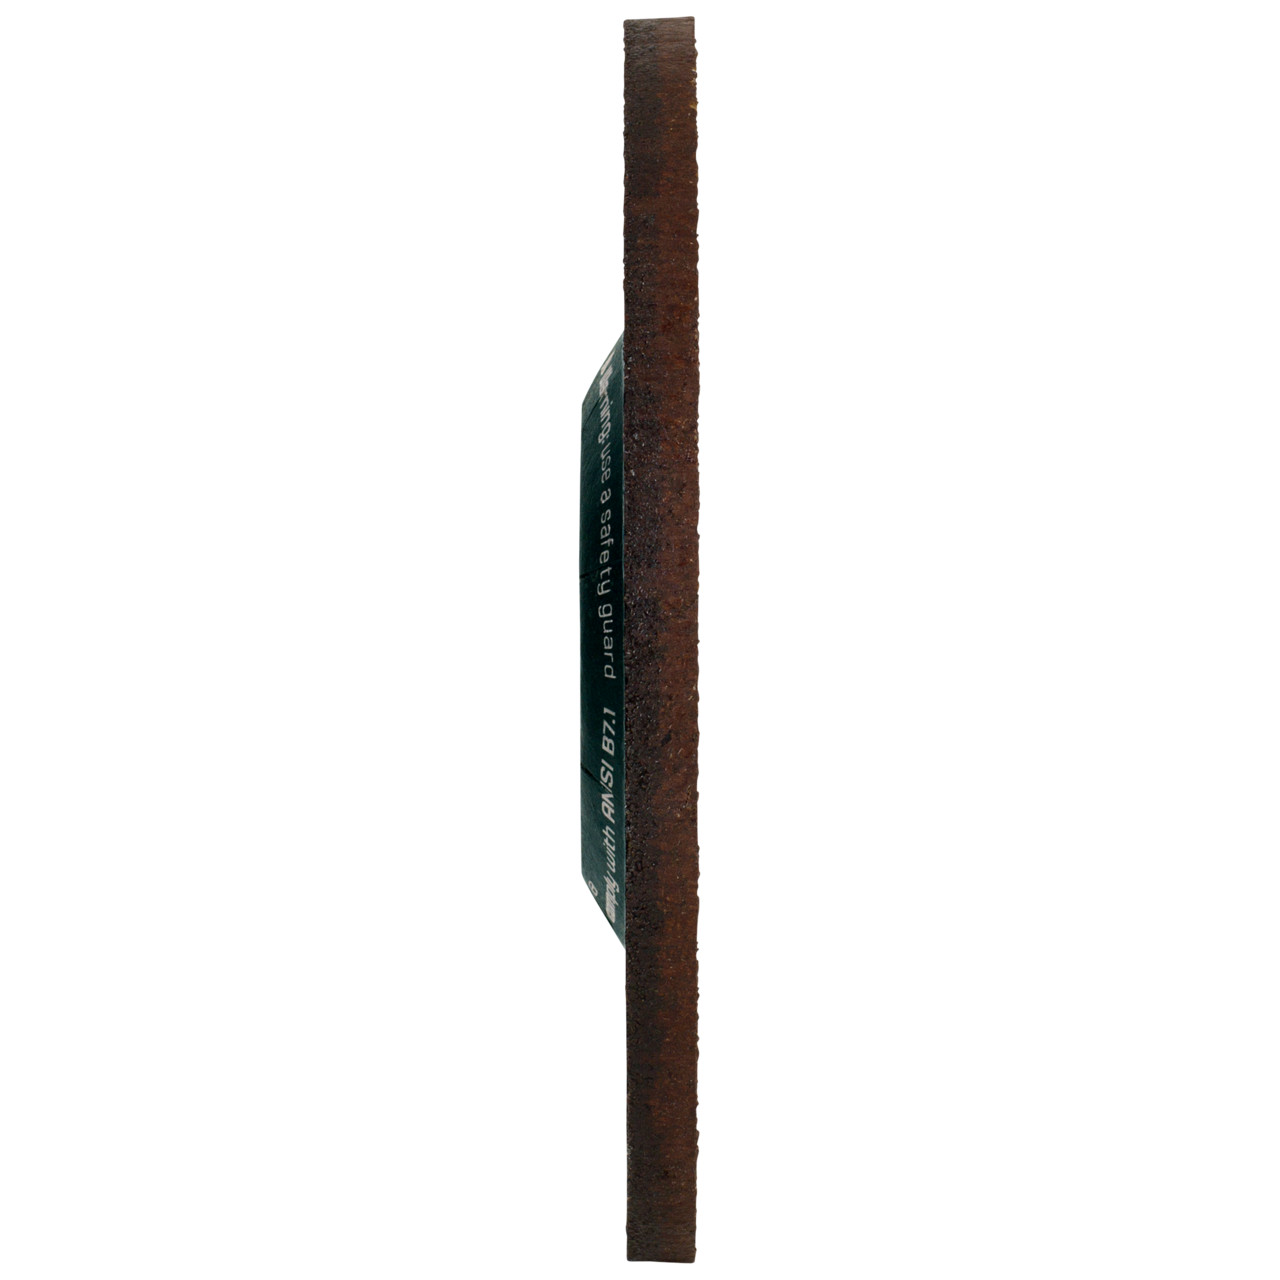 Tyrolit Karhennuslevy DxUxH 125x7x22.23 CERABOND X teräkselle ja ruostumattomalle teräkselle